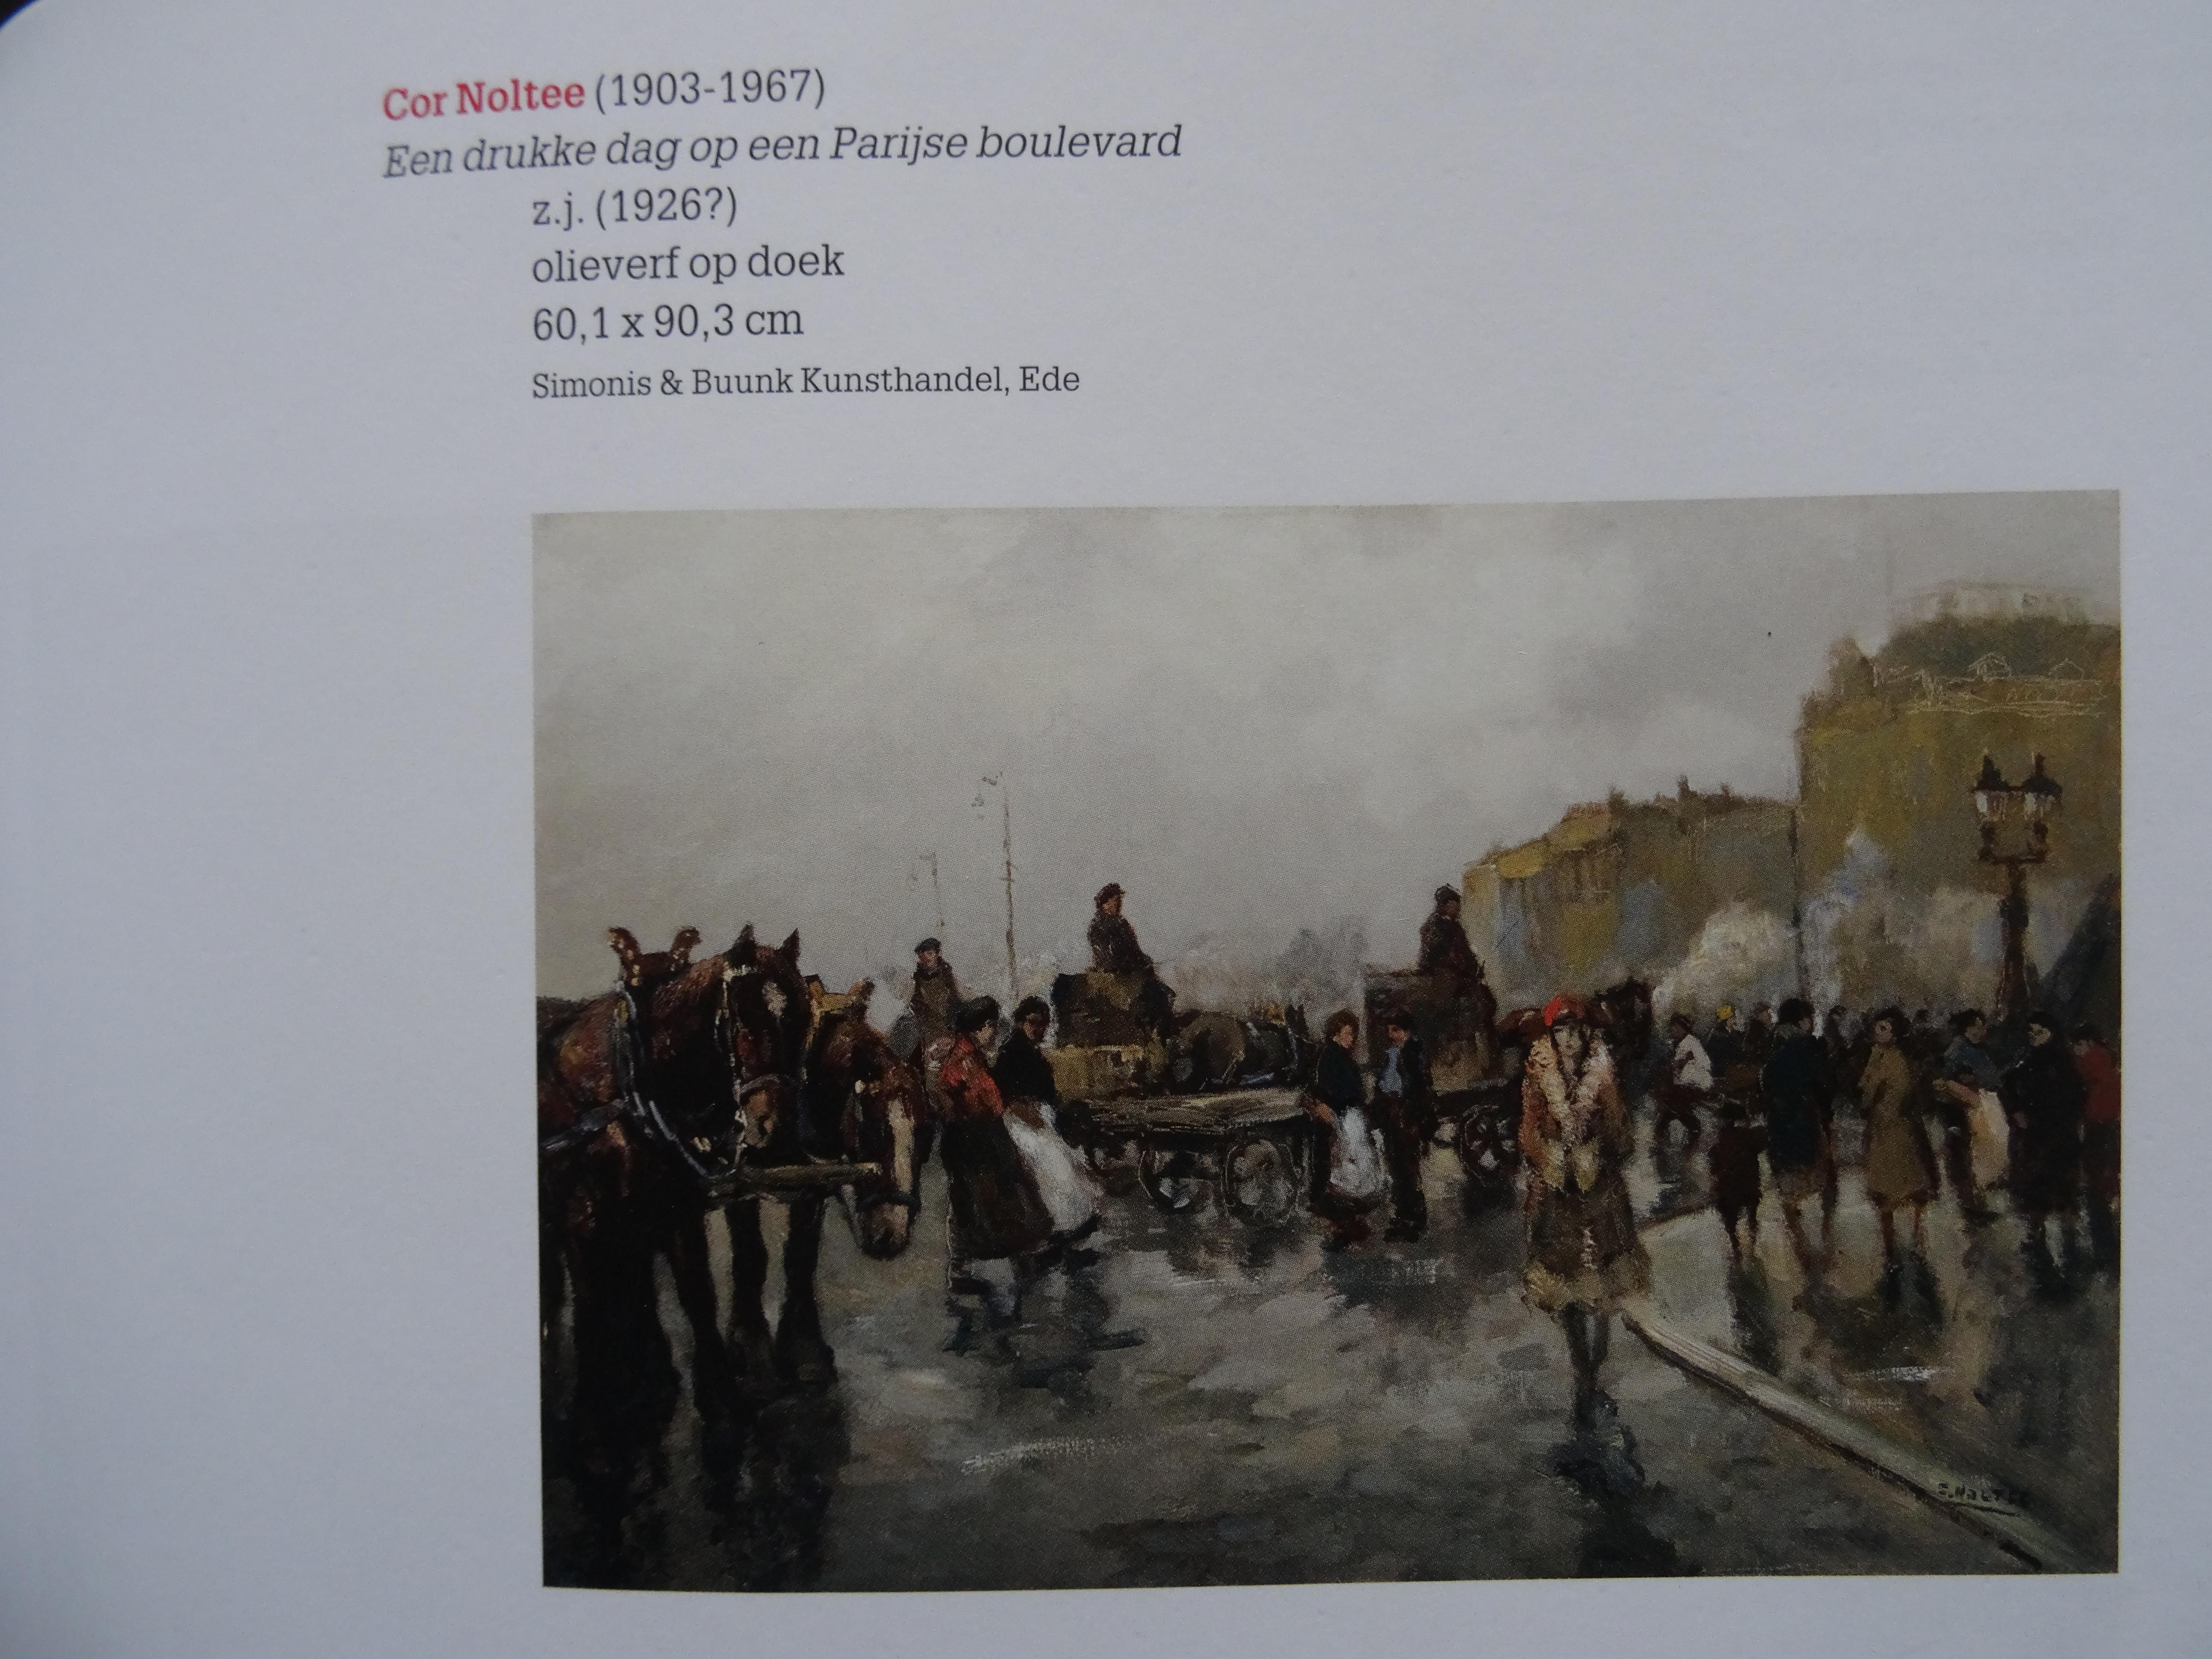 Paris Boulevard. 20th century, canvas, oil, 60x90 cm - Gray Landscape Painting by Bernardus Cornelis Noltee